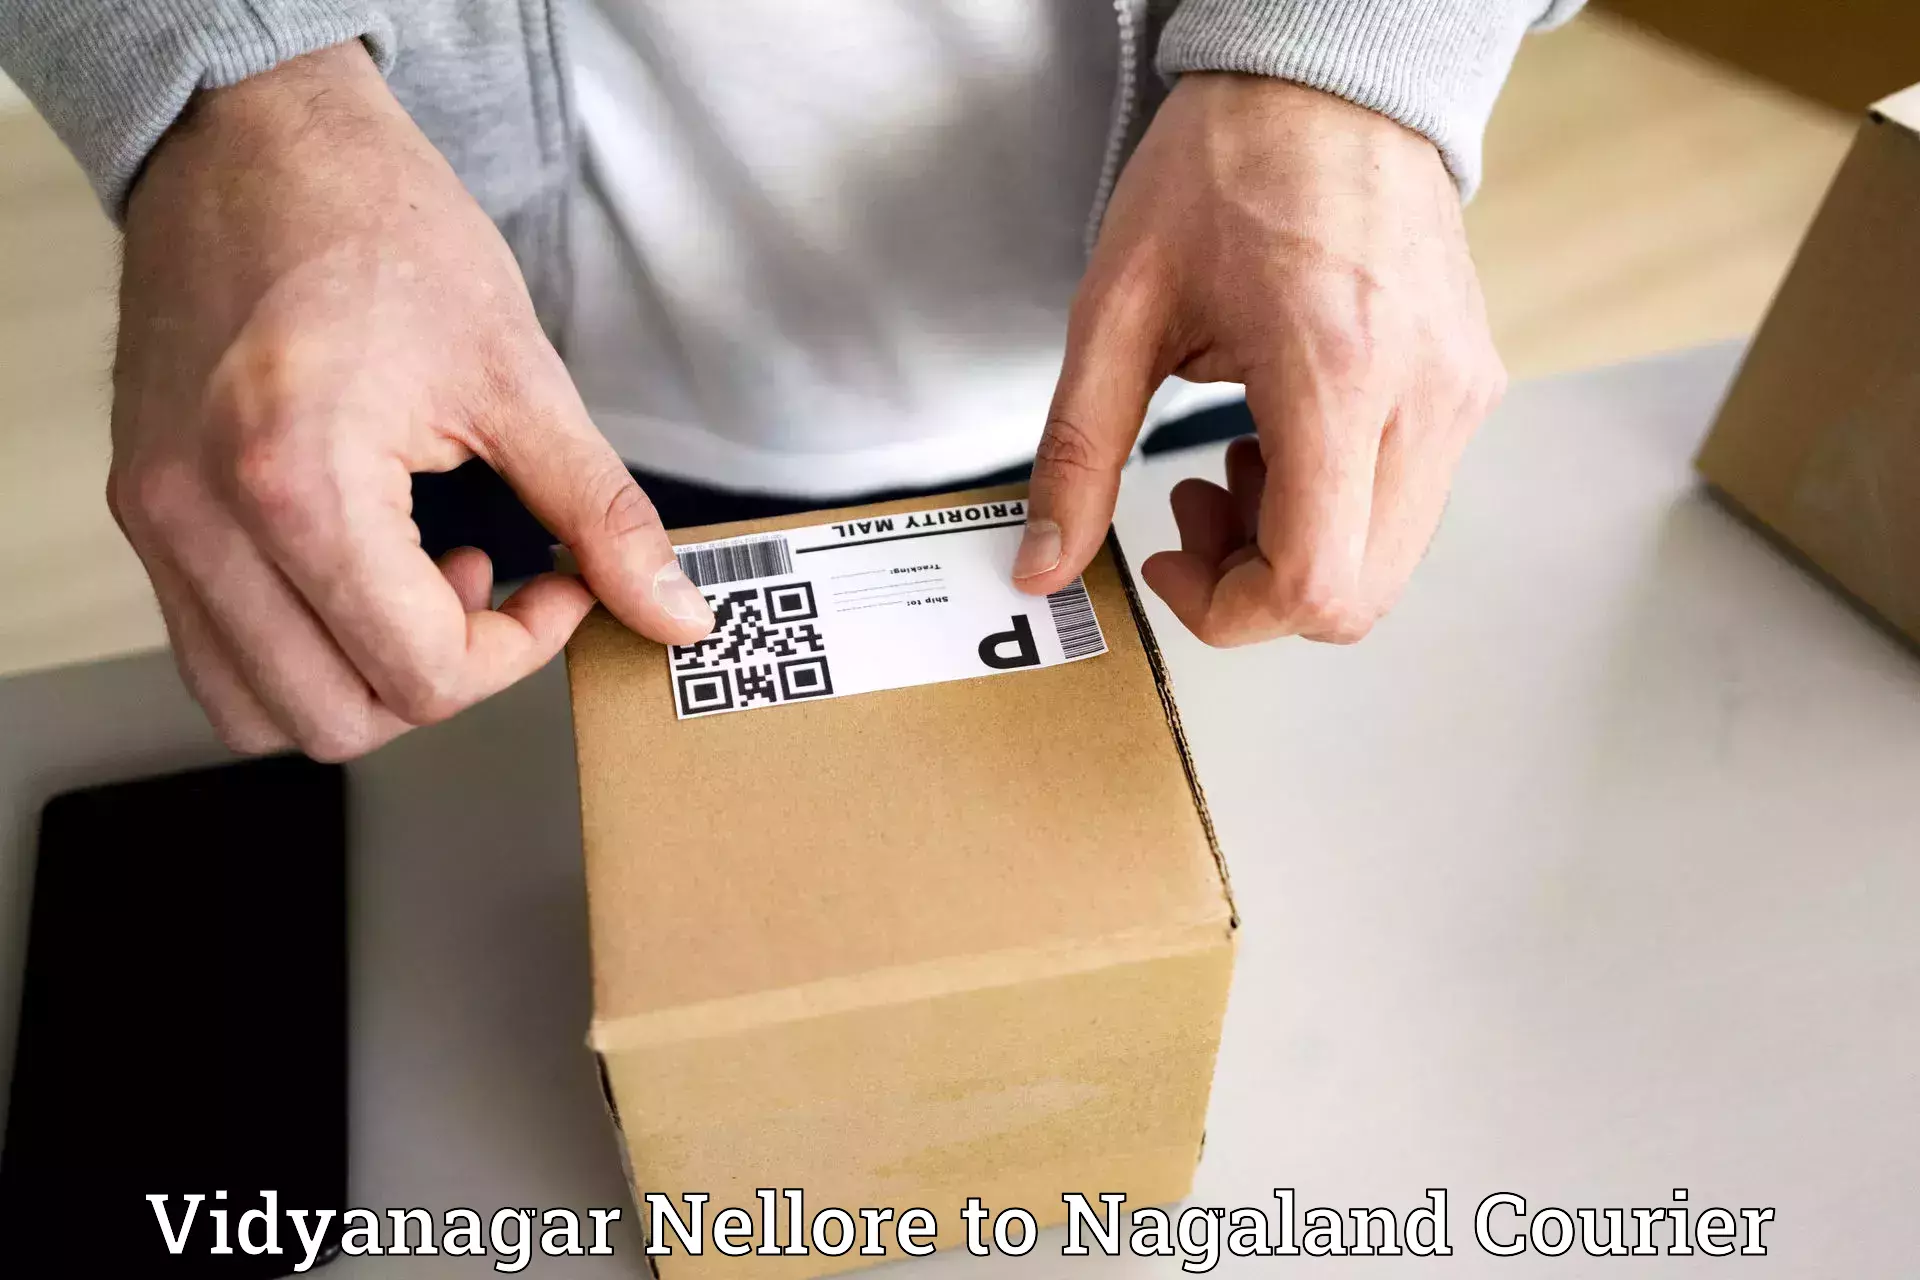 Modern courier technology Vidyanagar Nellore to Longleng